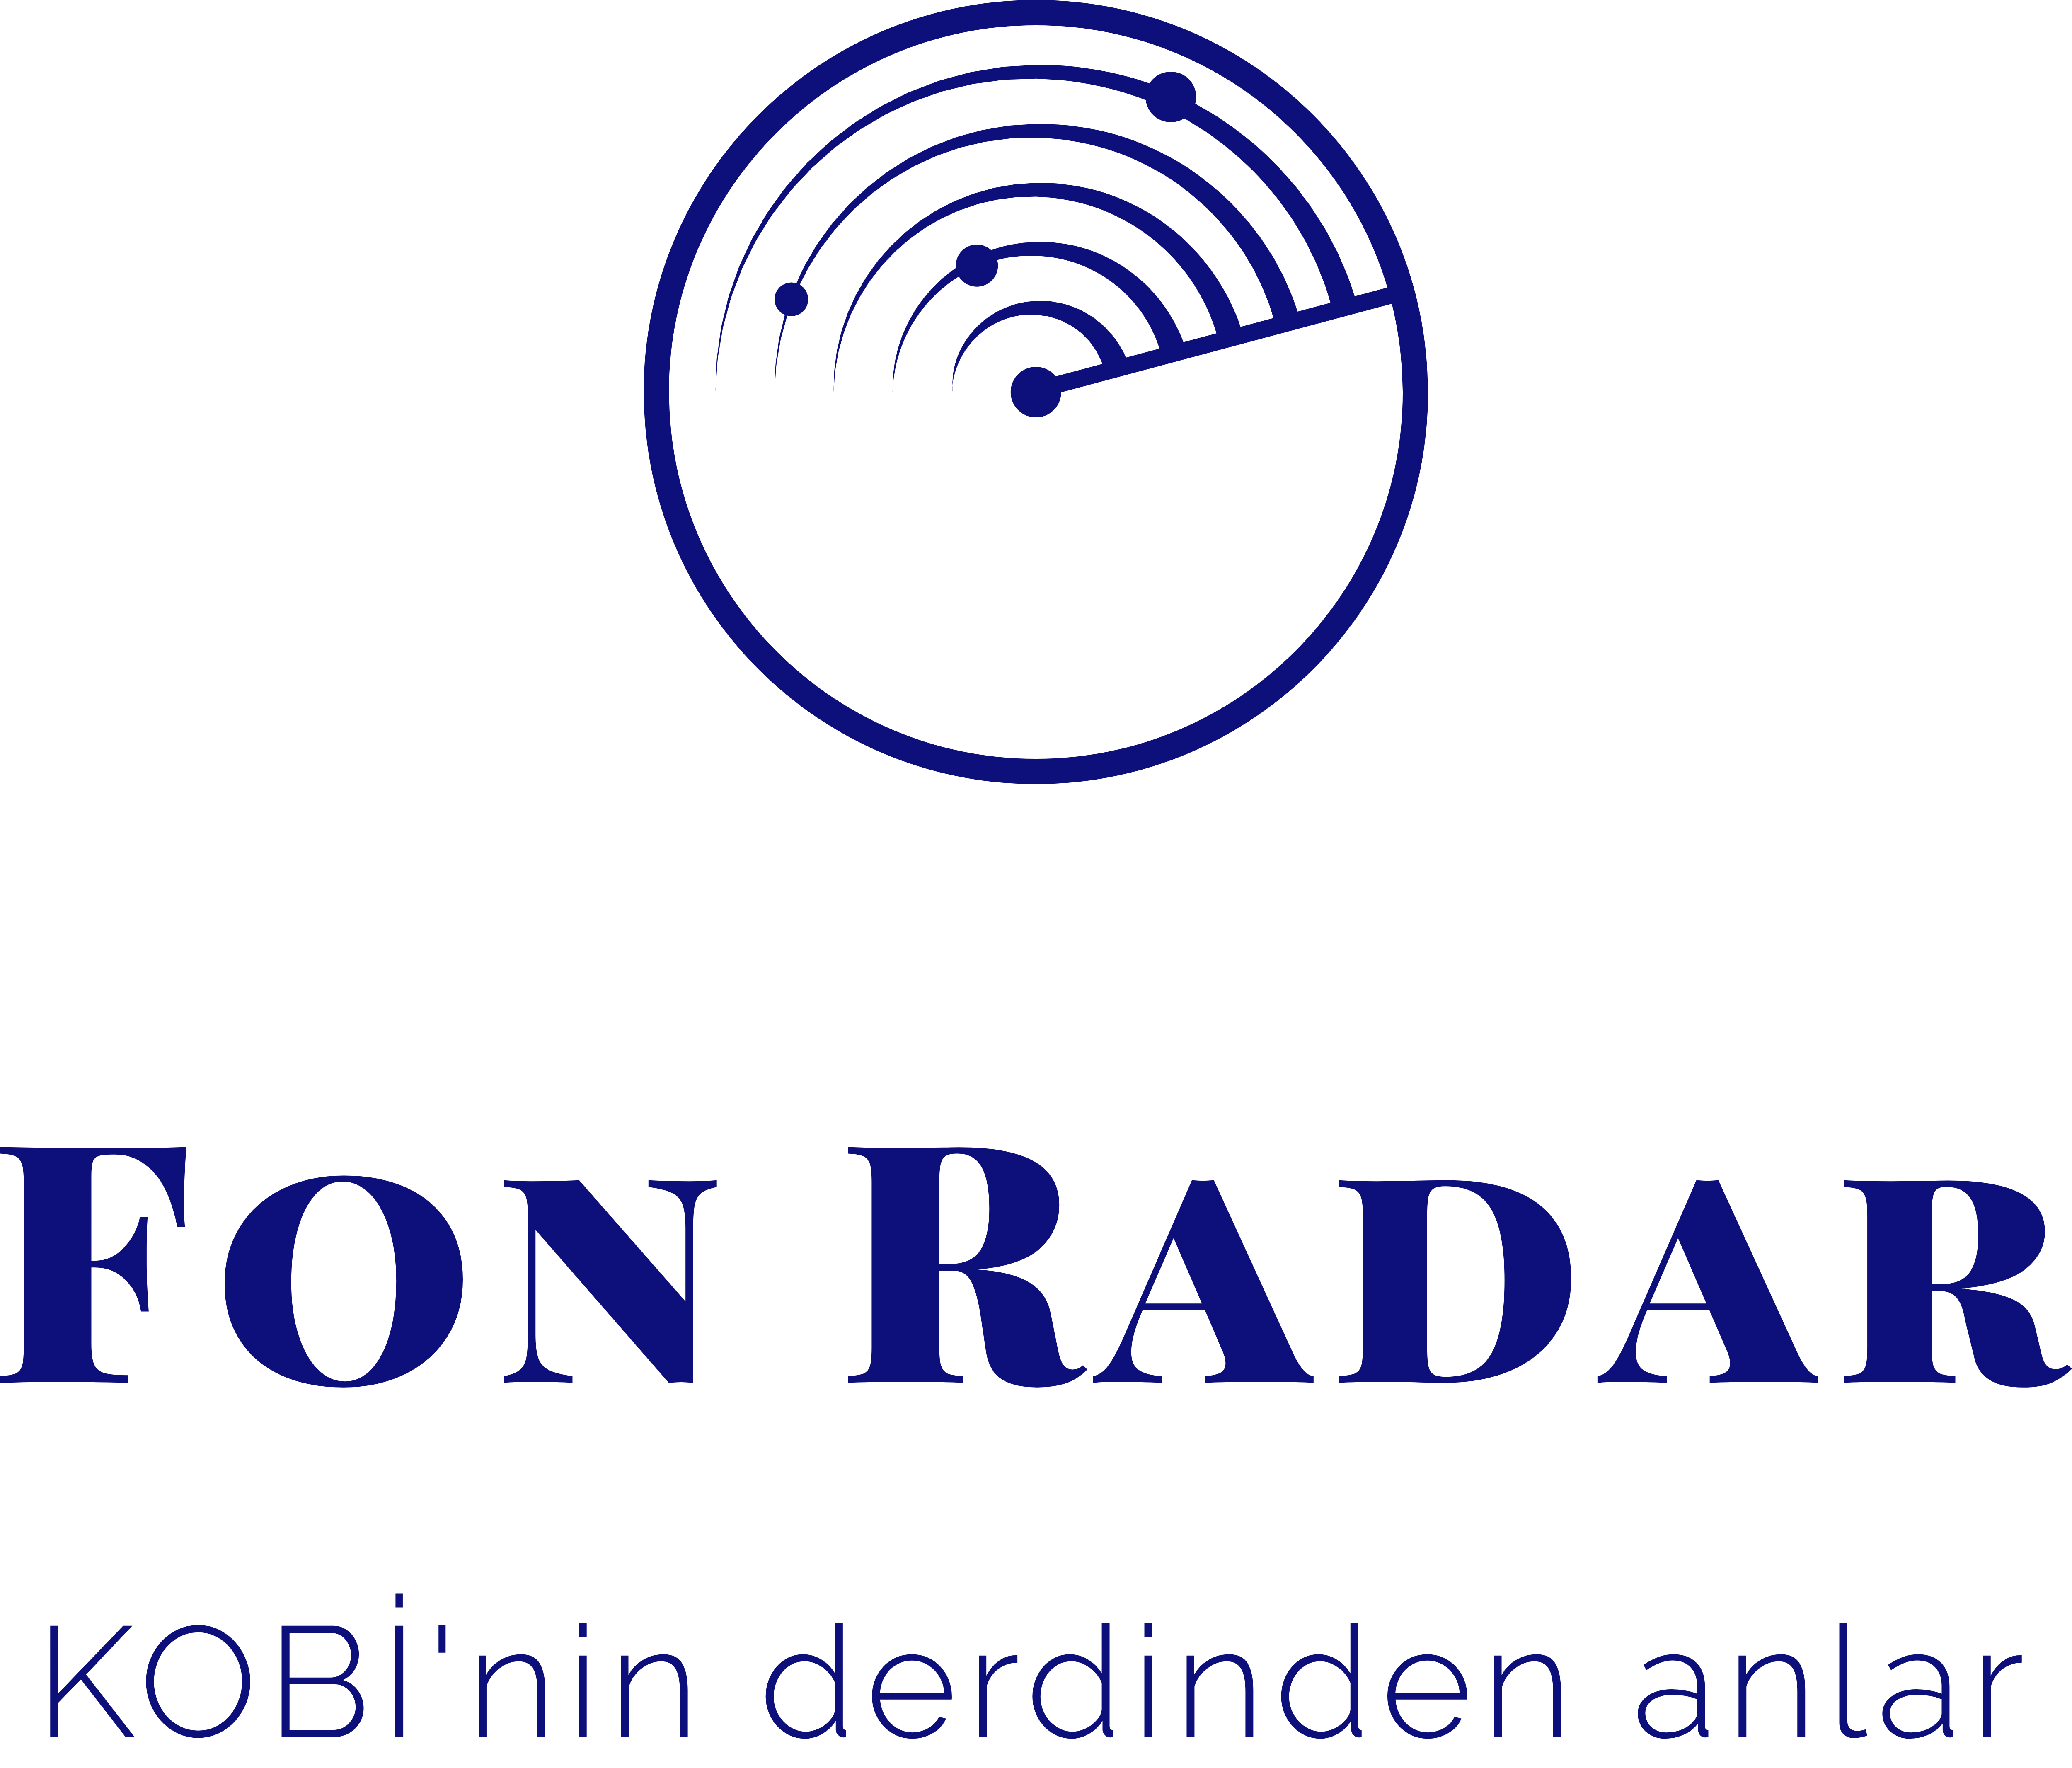 Fon Radar